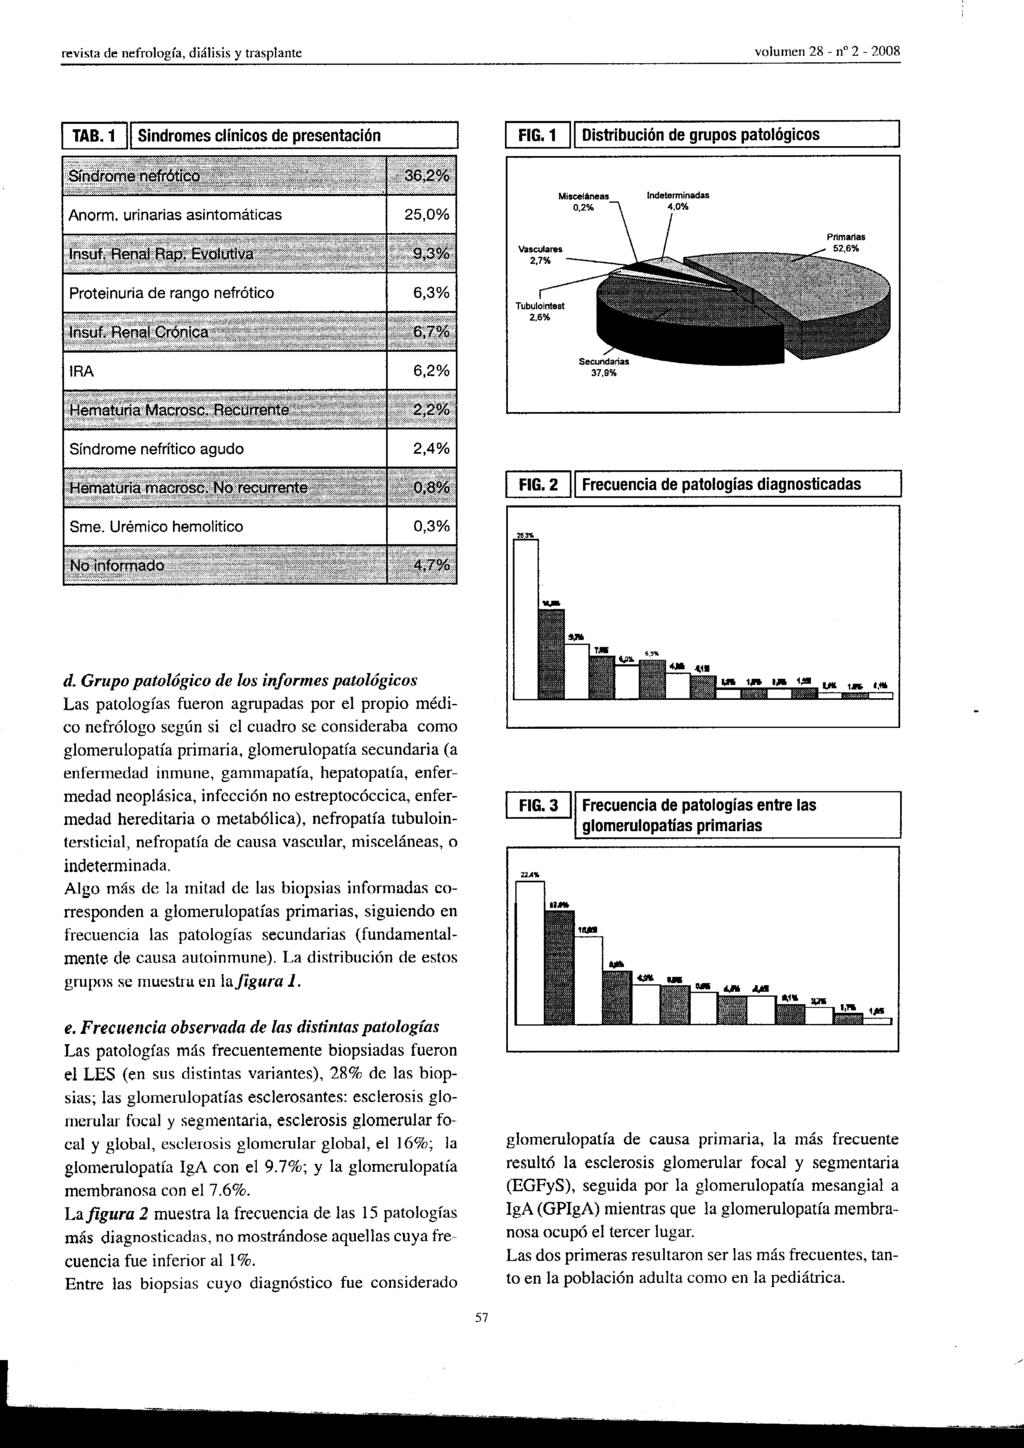 TAB. 1 11 Sindromes clínicos de presentación FIG. 1 1I Distribución de grupos patológicos Misceláneas 0.2% FIG.2 11 Frecuencia de patologías diagnosticadas d.